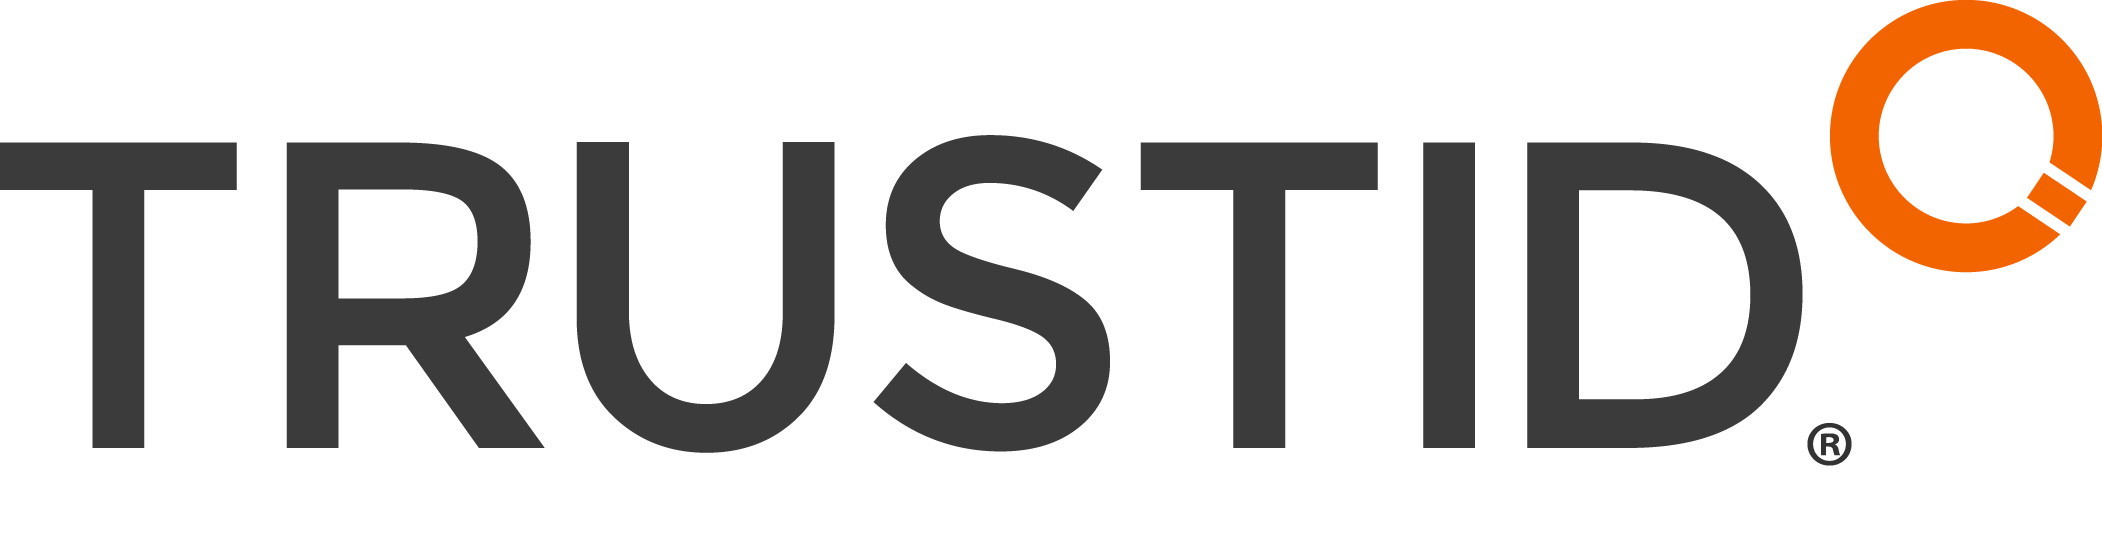 TRUSTID Logo Full